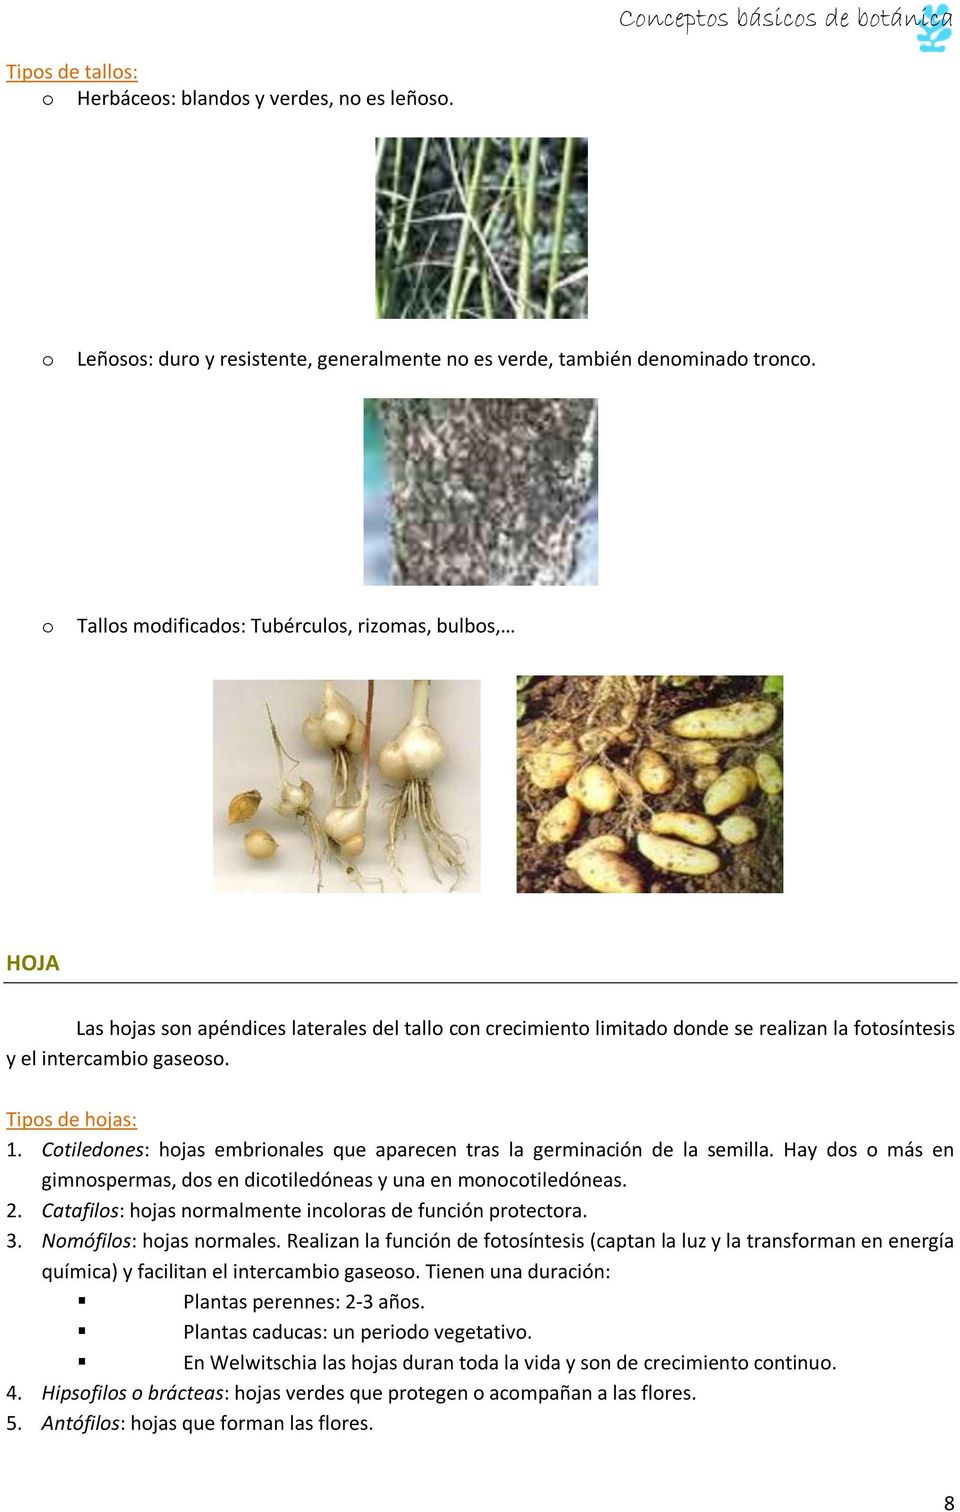 Tipos de hojas: 1. Cotiledones: hojas embrionales que aparecen tras la germinación de la semilla. Hay dos o más en gimnospermas, dos en dicotiledóneas y una en monocotiledóneas. 2.